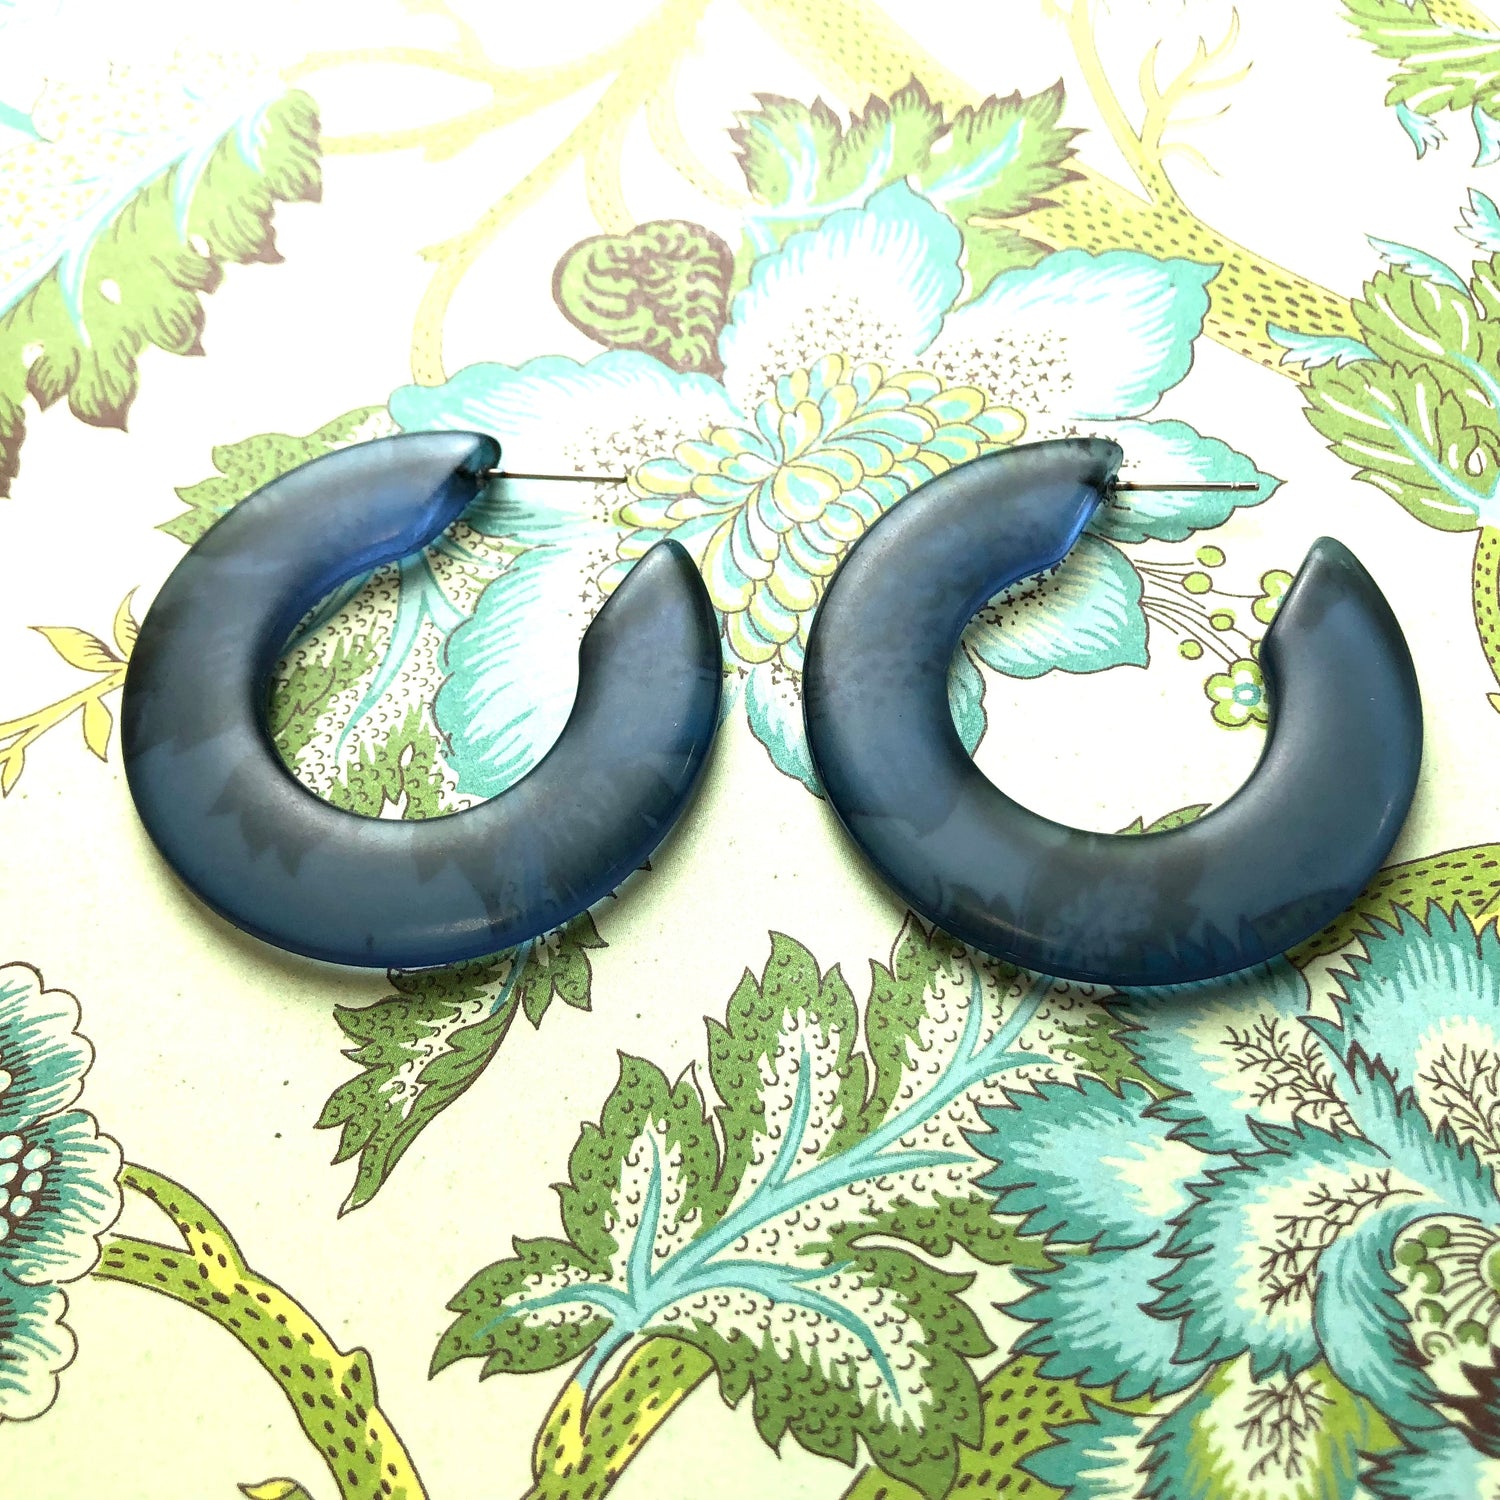 big blue hoop earrings